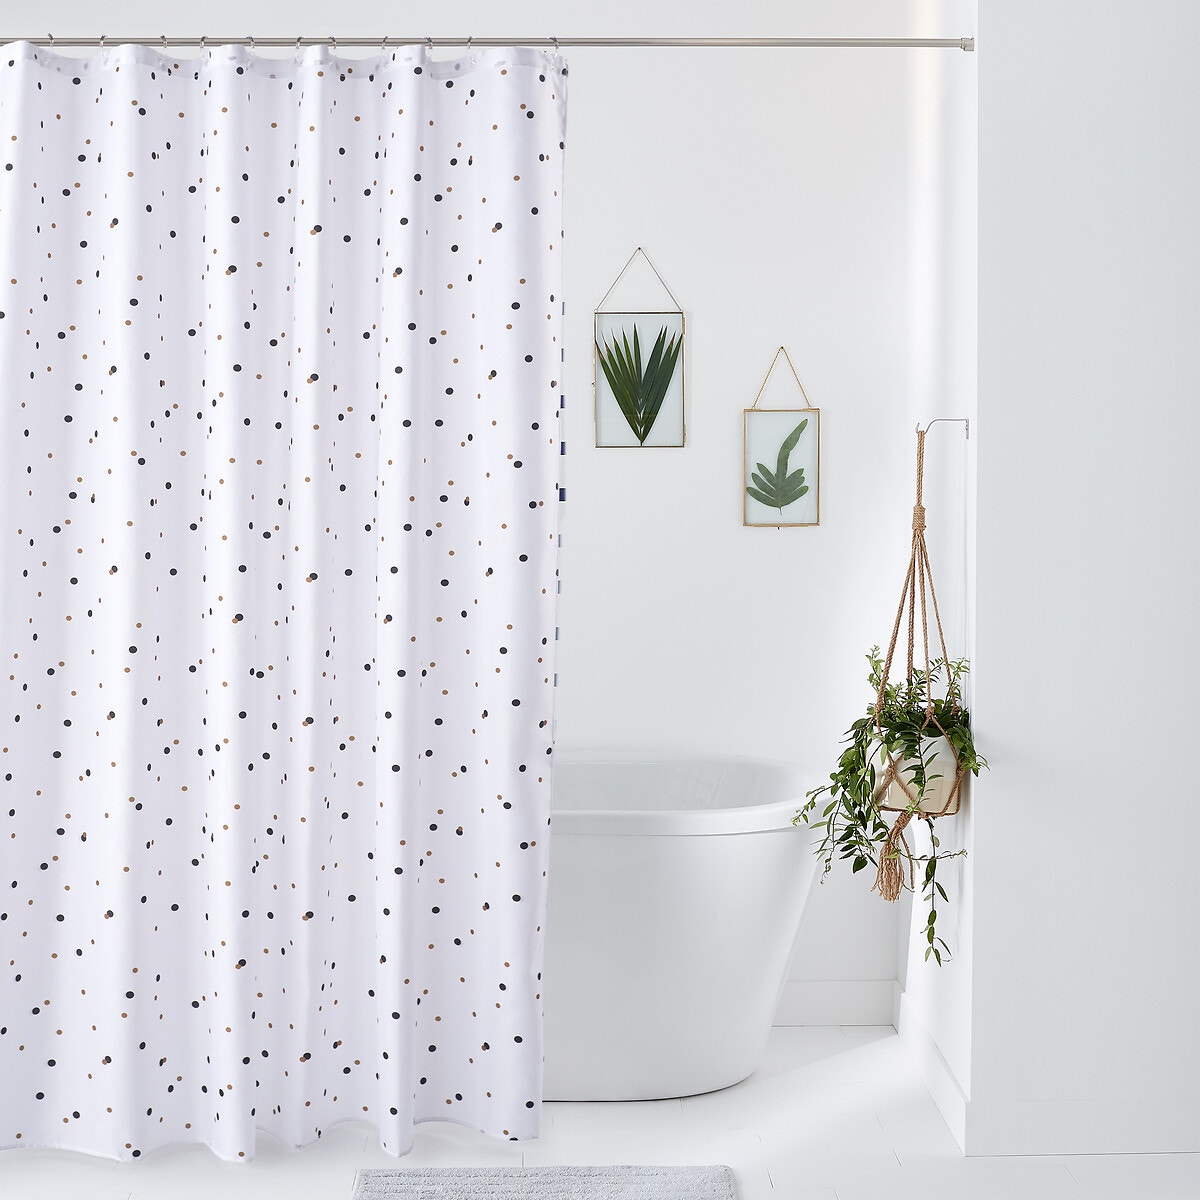 Σπίτι > Λευκά είδη > Μπάνιο > Κουρτίνες μπάνιου Κουρτίνα μπάνιου 200x180 cm